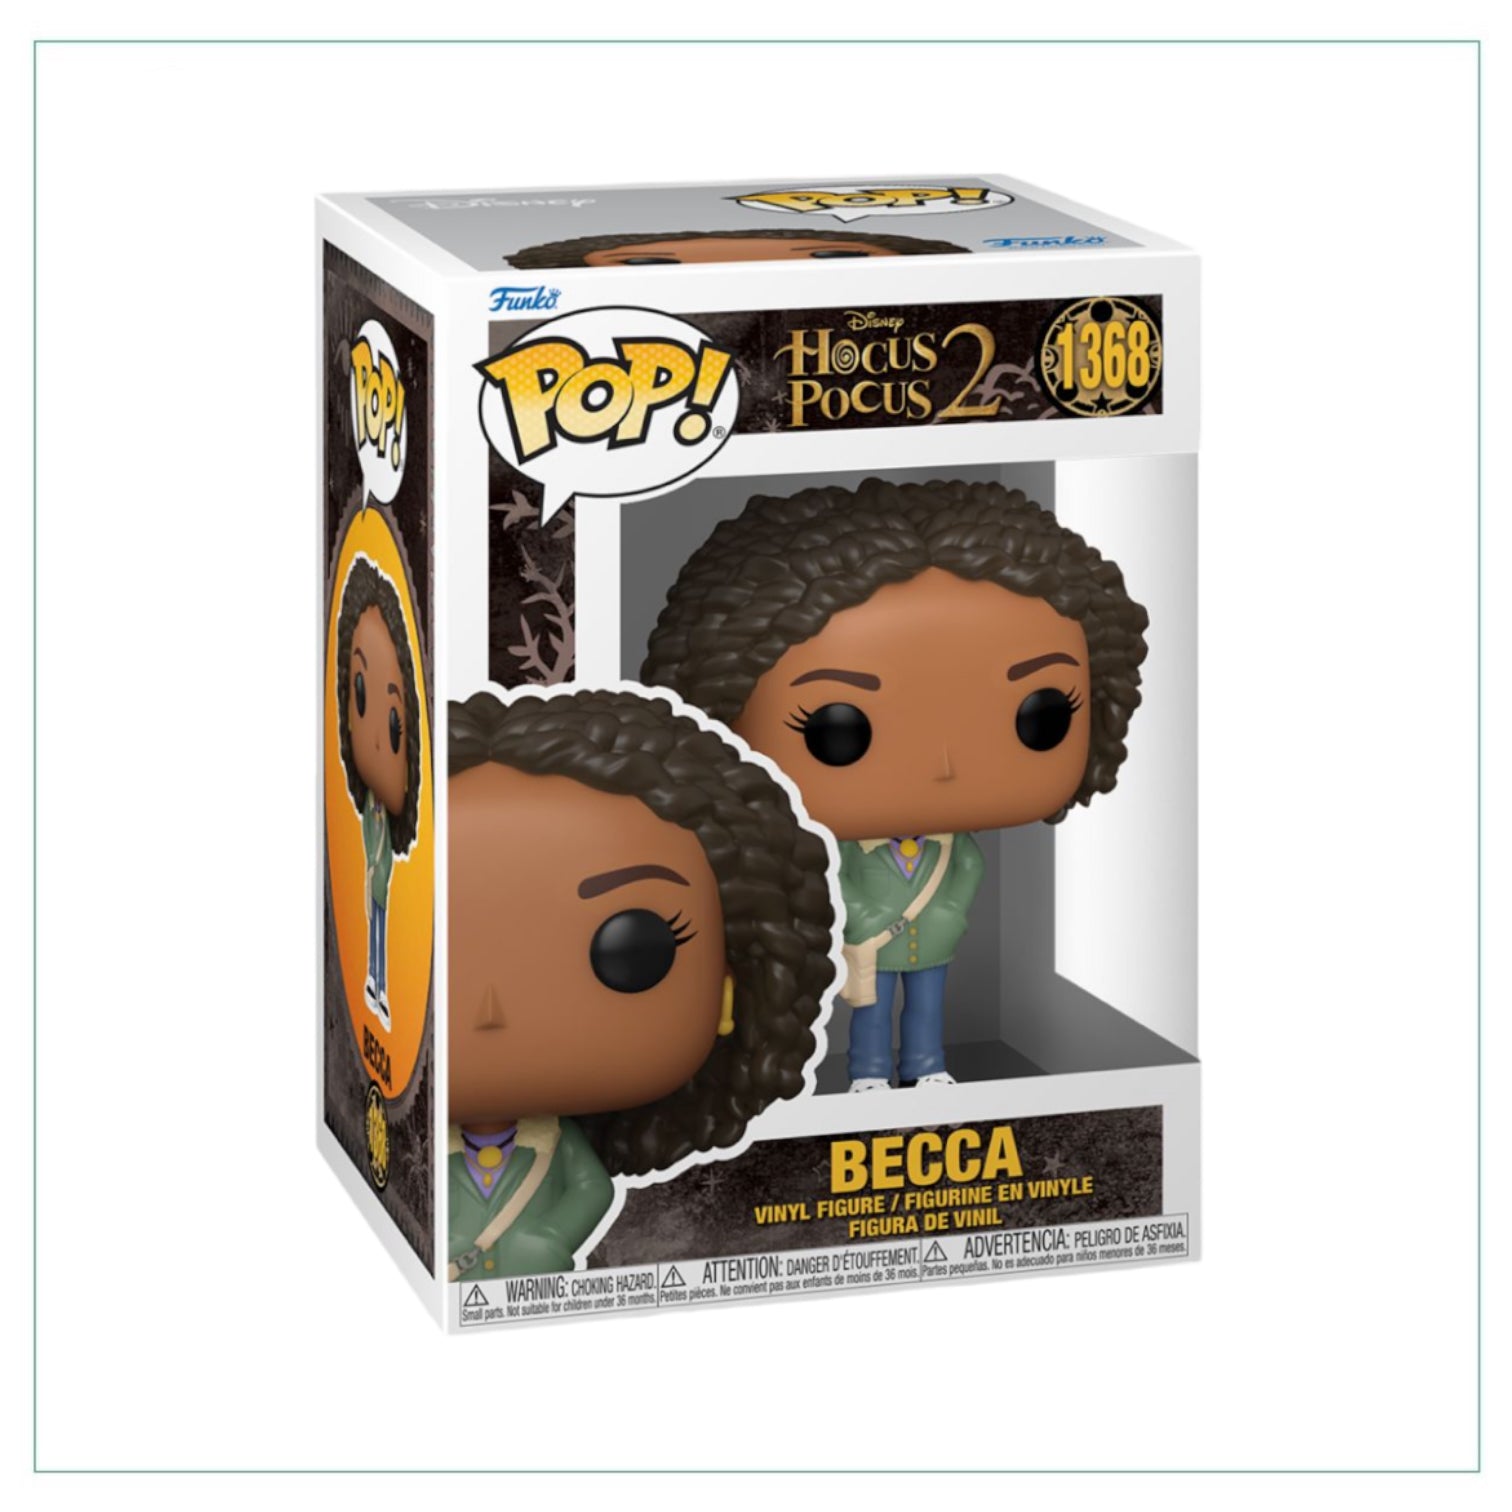 Becca #1368 Funko Pop! Hocus Pocus 2